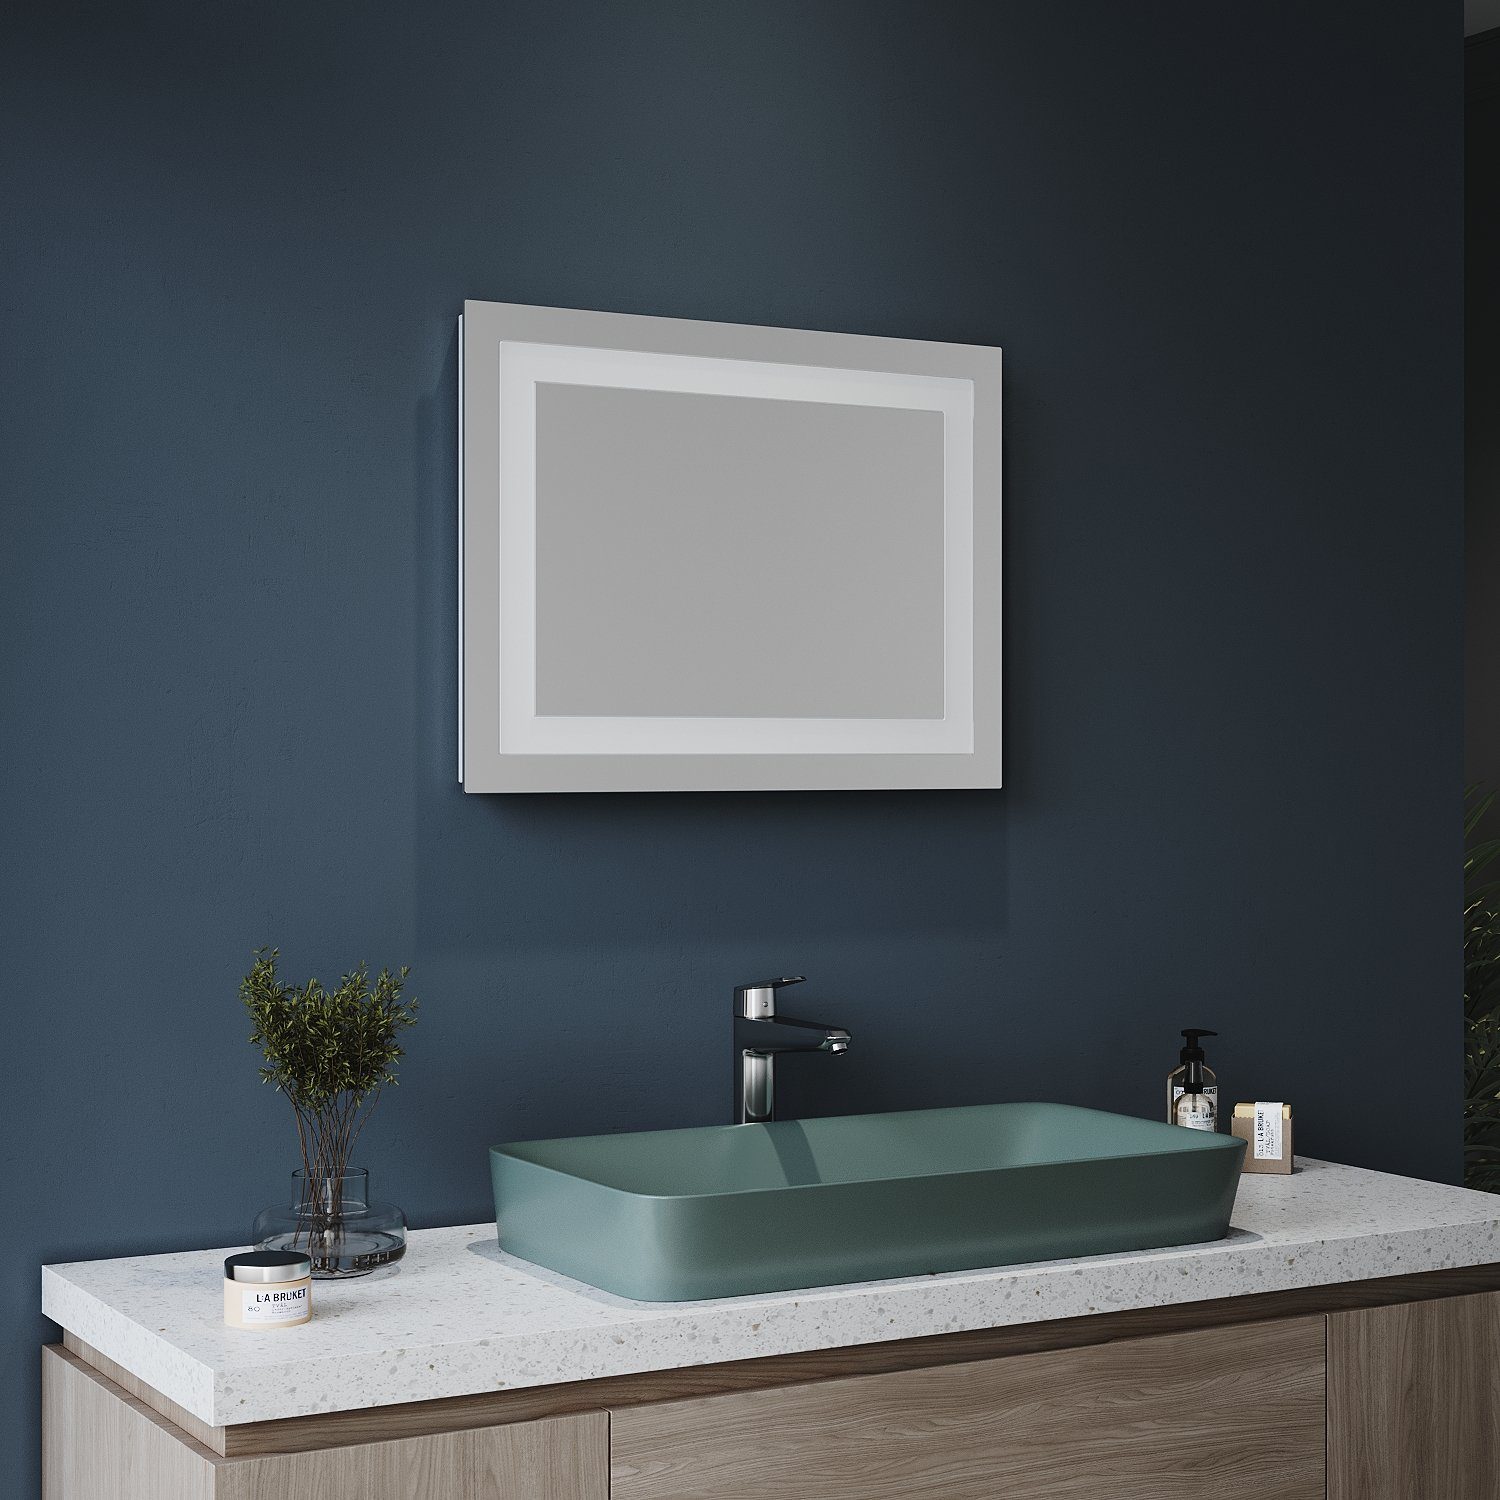 60×50 Badspiegel, Badspiegel, Lichtspiegel Wandspiegel, mit IP44 Badspiegel Wandschalter, cm, SONNI Badezimmerspiegel, Beleuchtung, LED